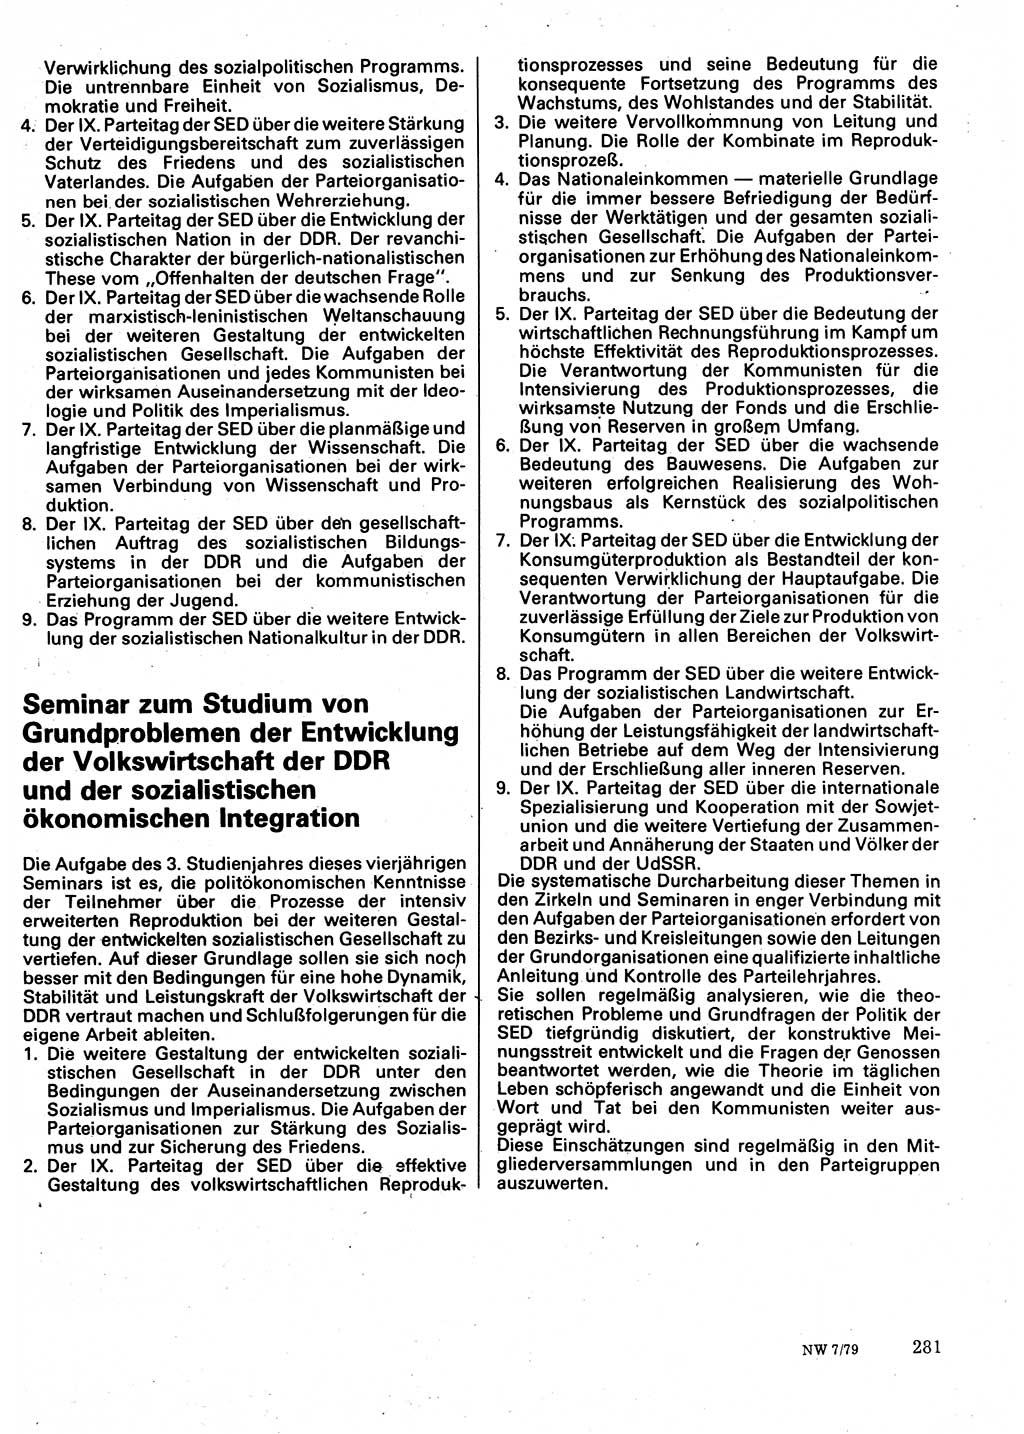 Neuer Weg (NW), Organ des Zentralkomitees (ZK) der SED (Sozialistische Einheitspartei Deutschlands) für Fragen des Parteilebens, 34. Jahrgang [Deutsche Demokratische Republik (DDR)] 1979, Seite 281 (NW ZK SED DDR 1979, S. 281)